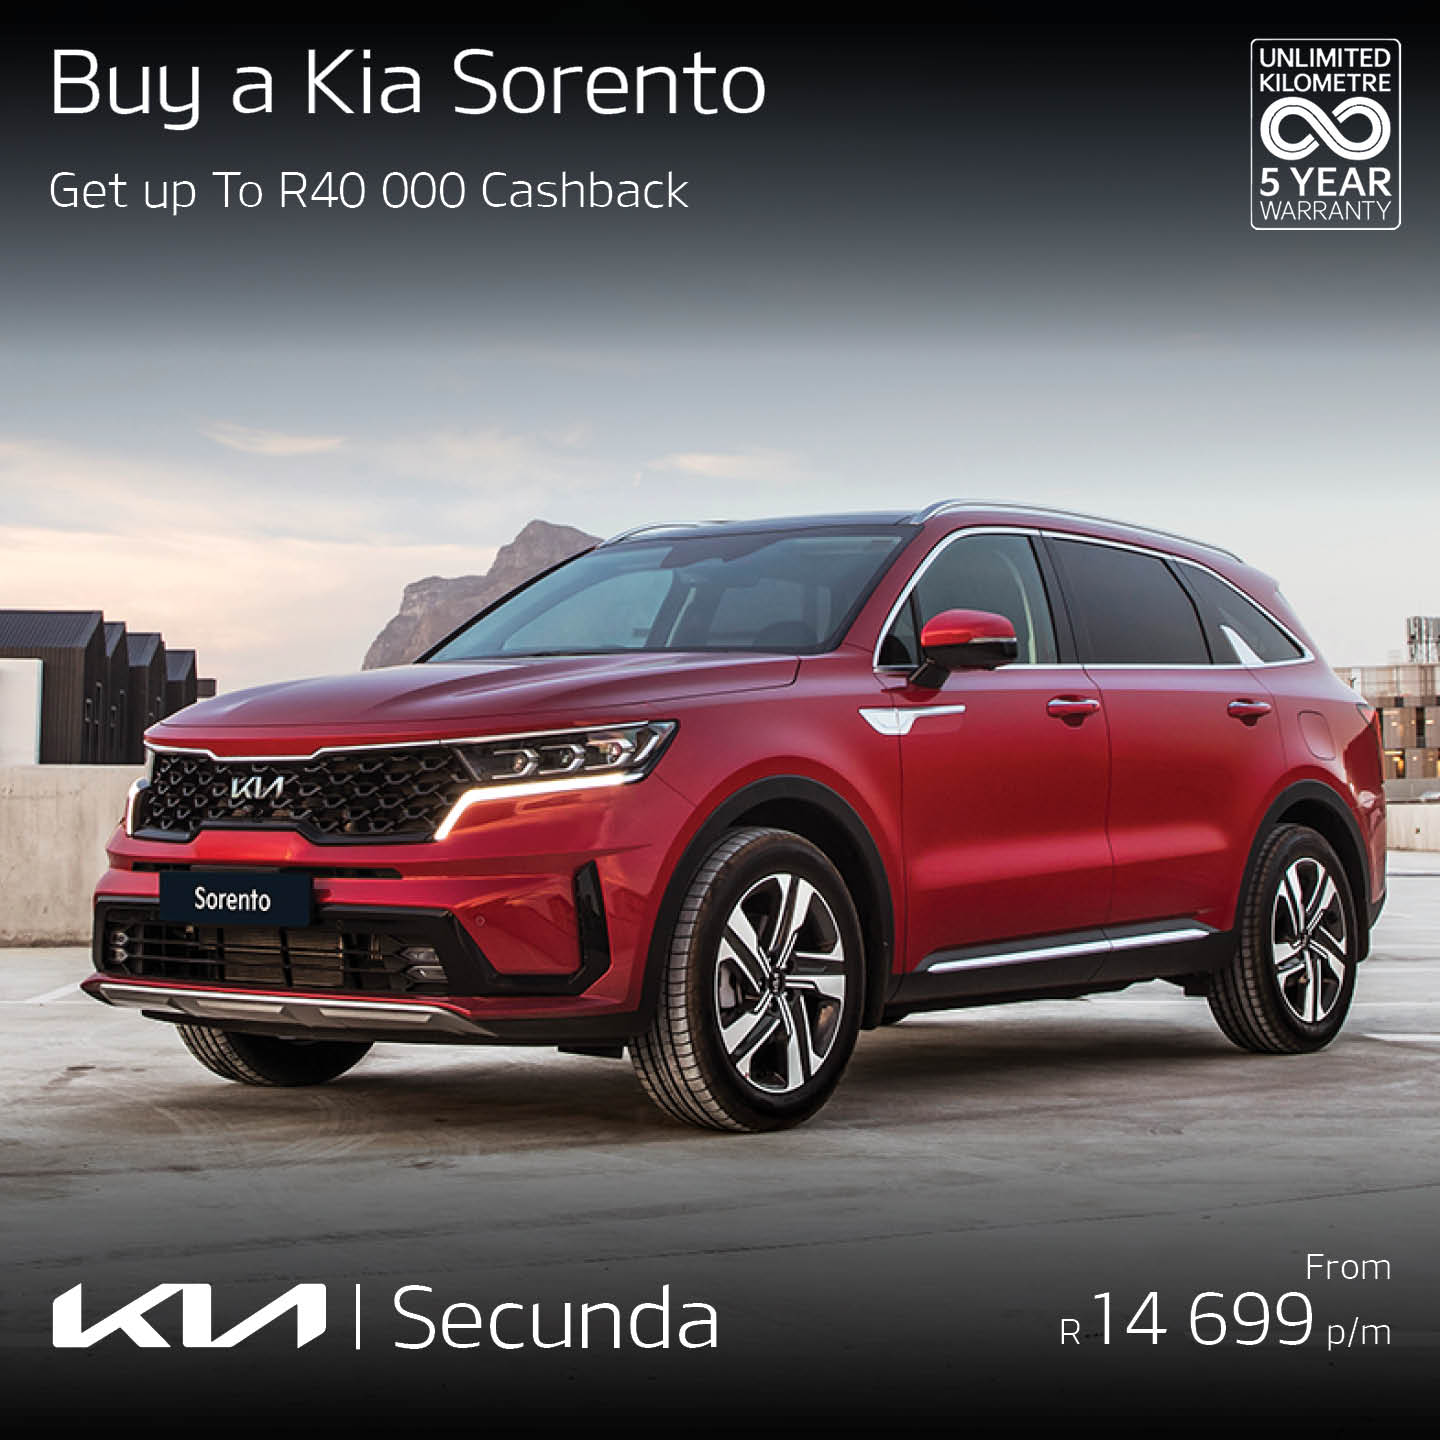 Buy a new KIA Sorento image from 